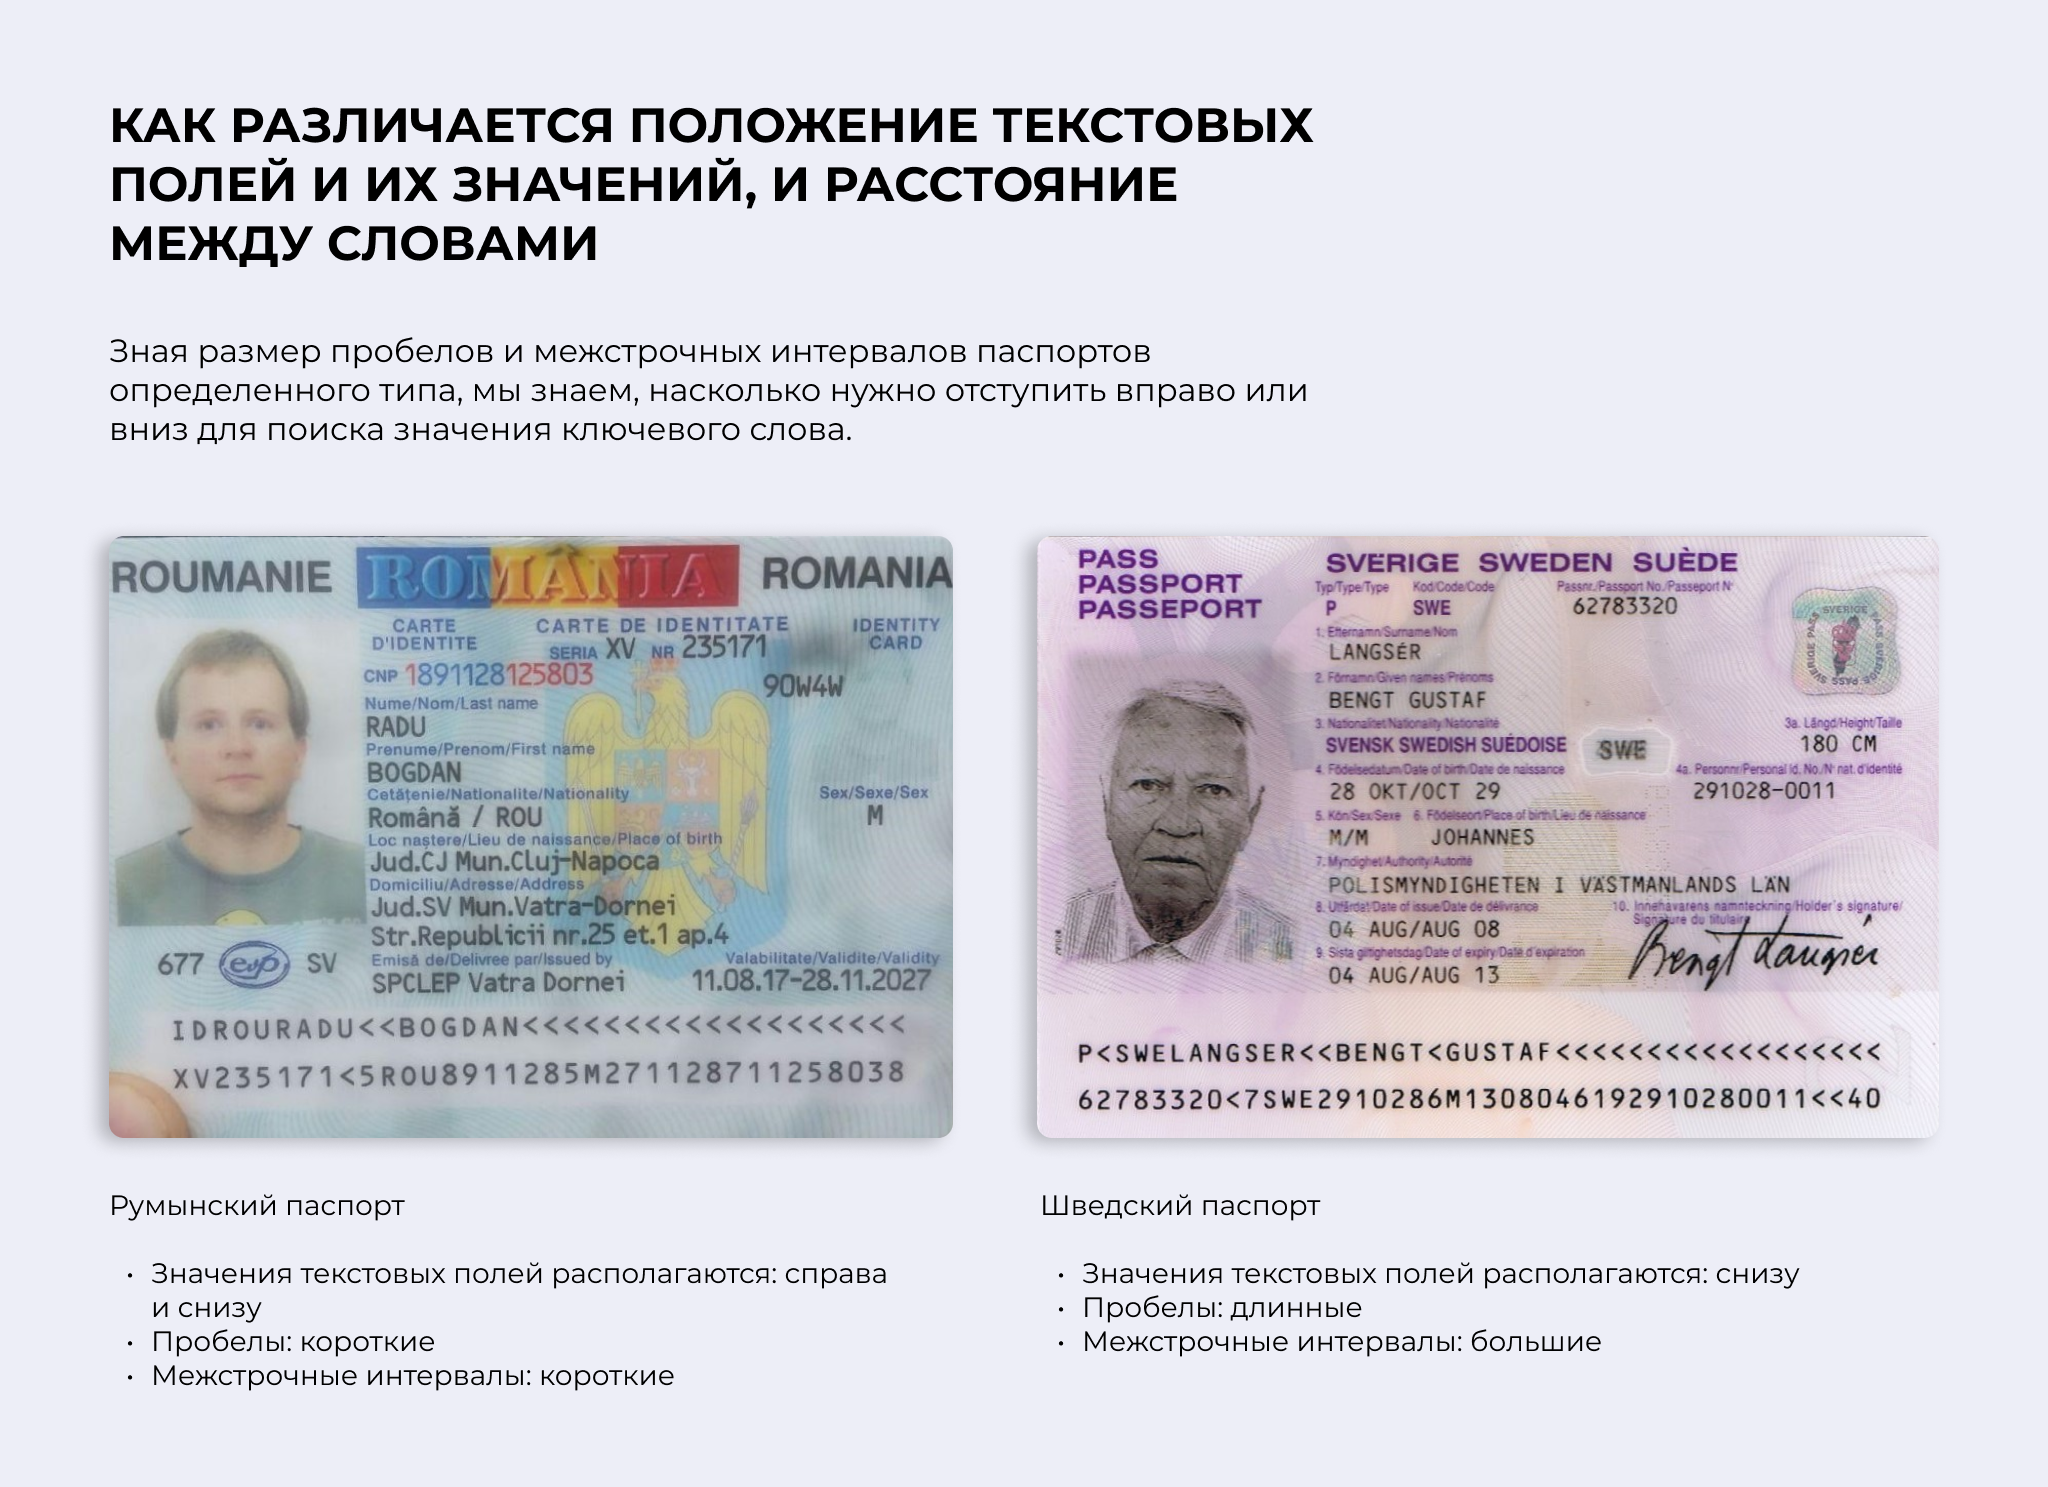 Различия паспортов разных стран на примере паспортов из открытых источников